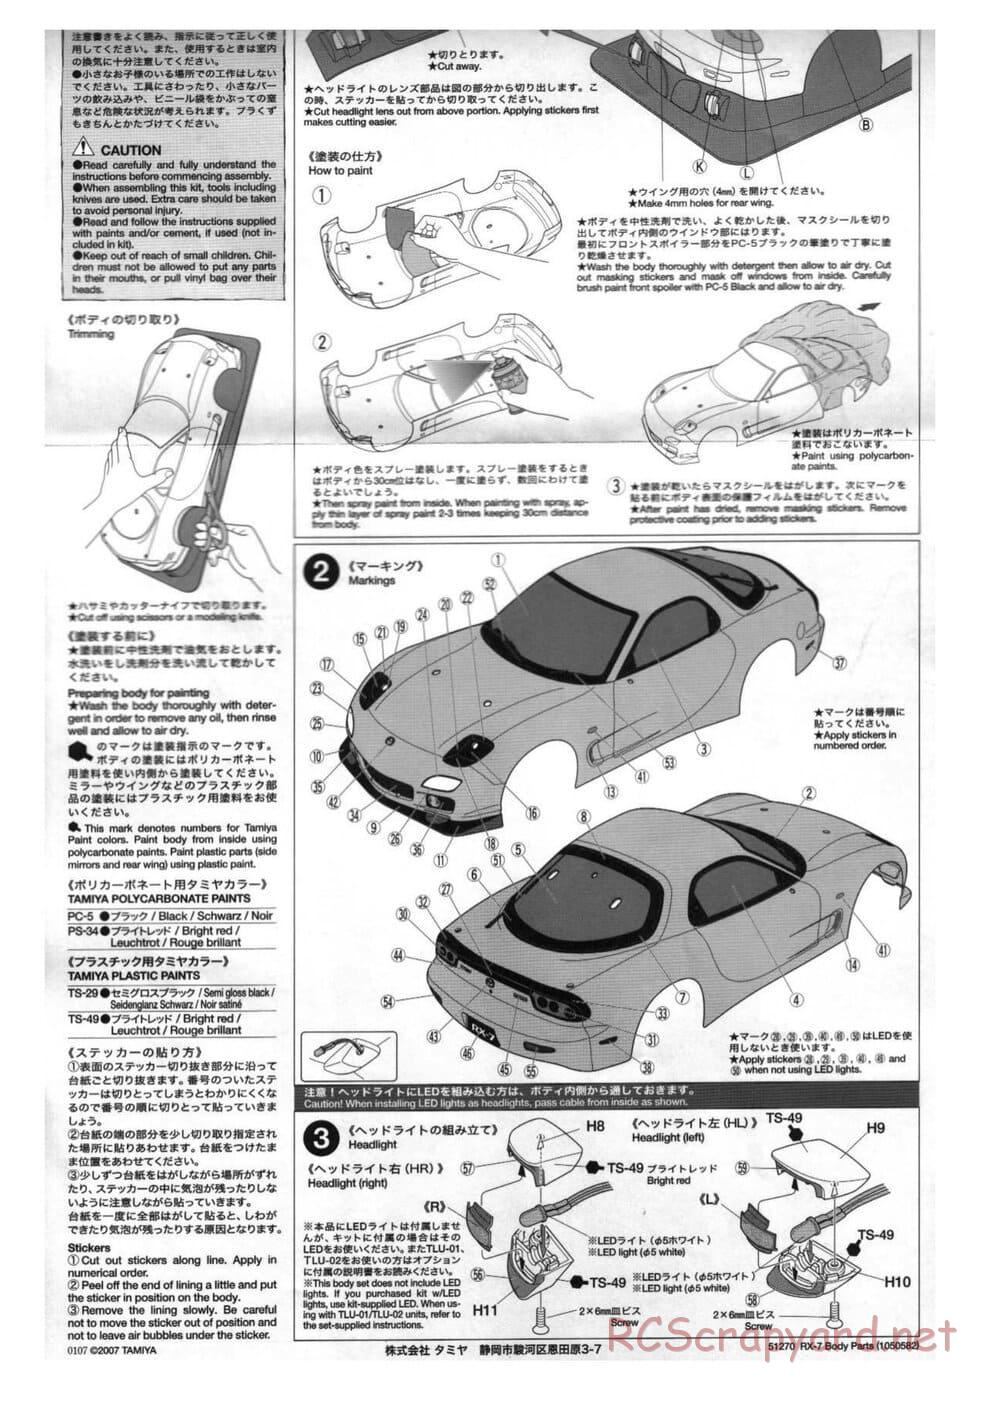 Tamiya - Mazda RX-7 - TT-01 Chassis - Body Manual - Page 2